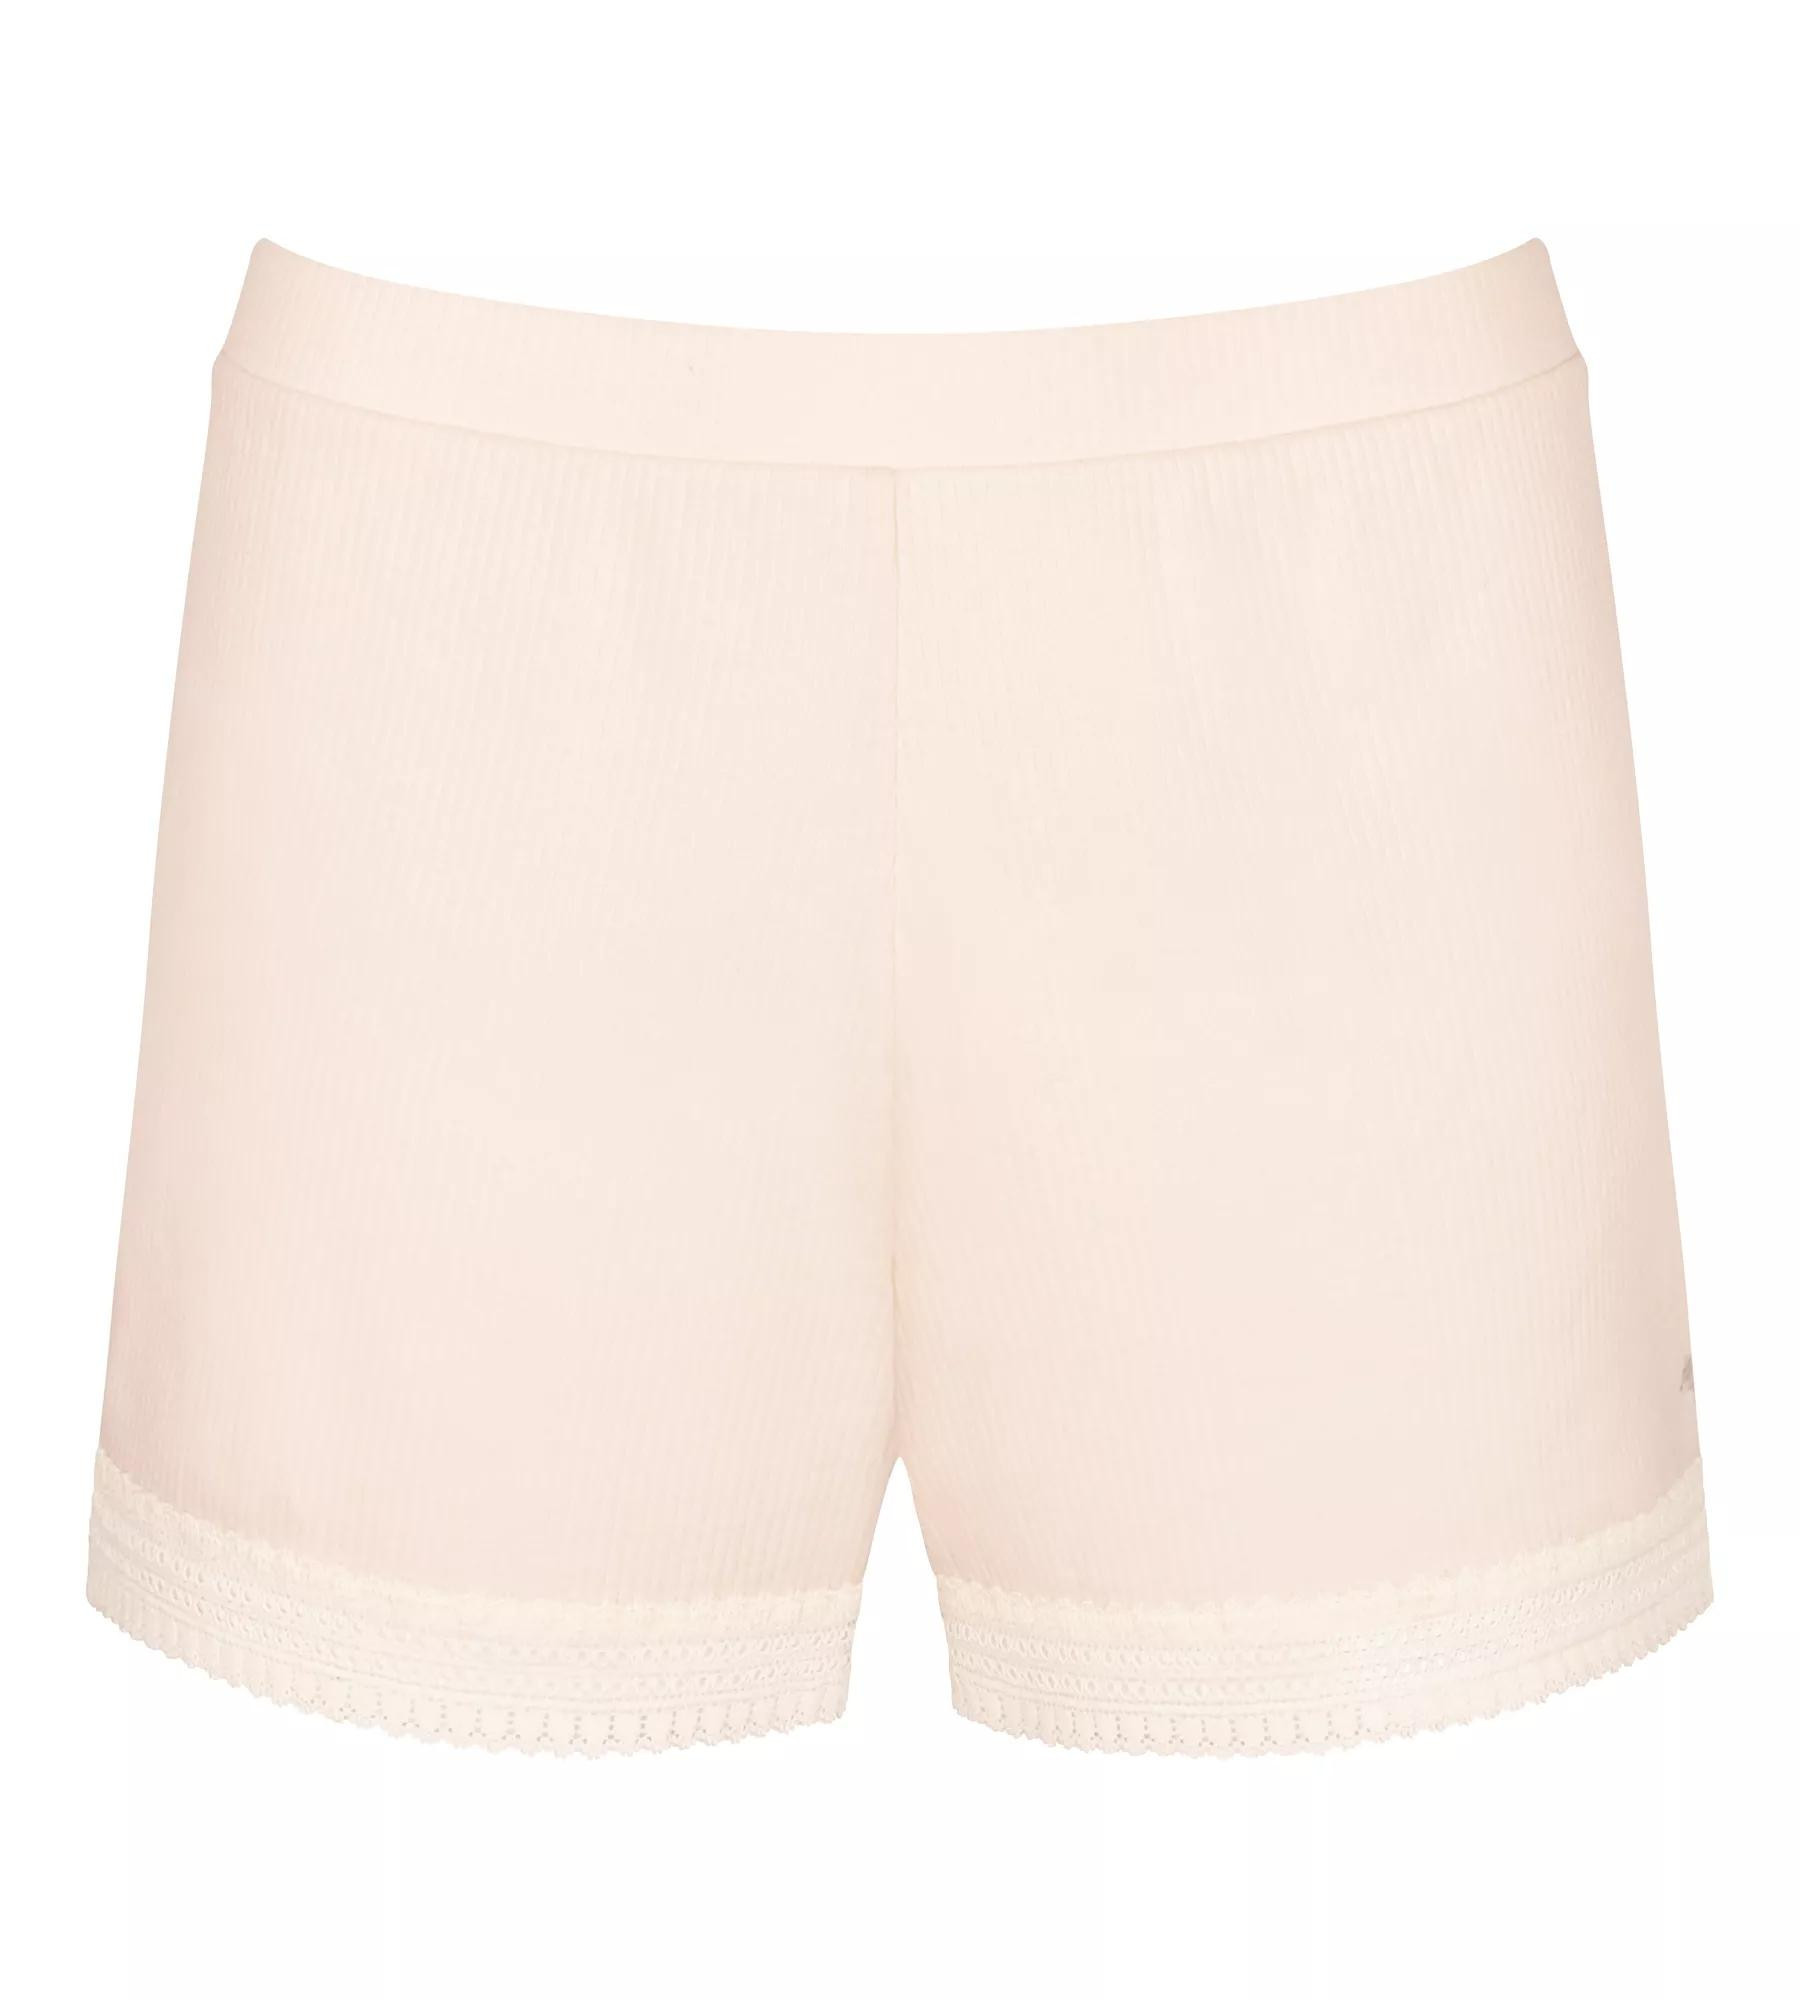 Dámské šortky GO Ribbed Short - ANGORA - sv. růžové 6308 - SLOGGI WHITE M